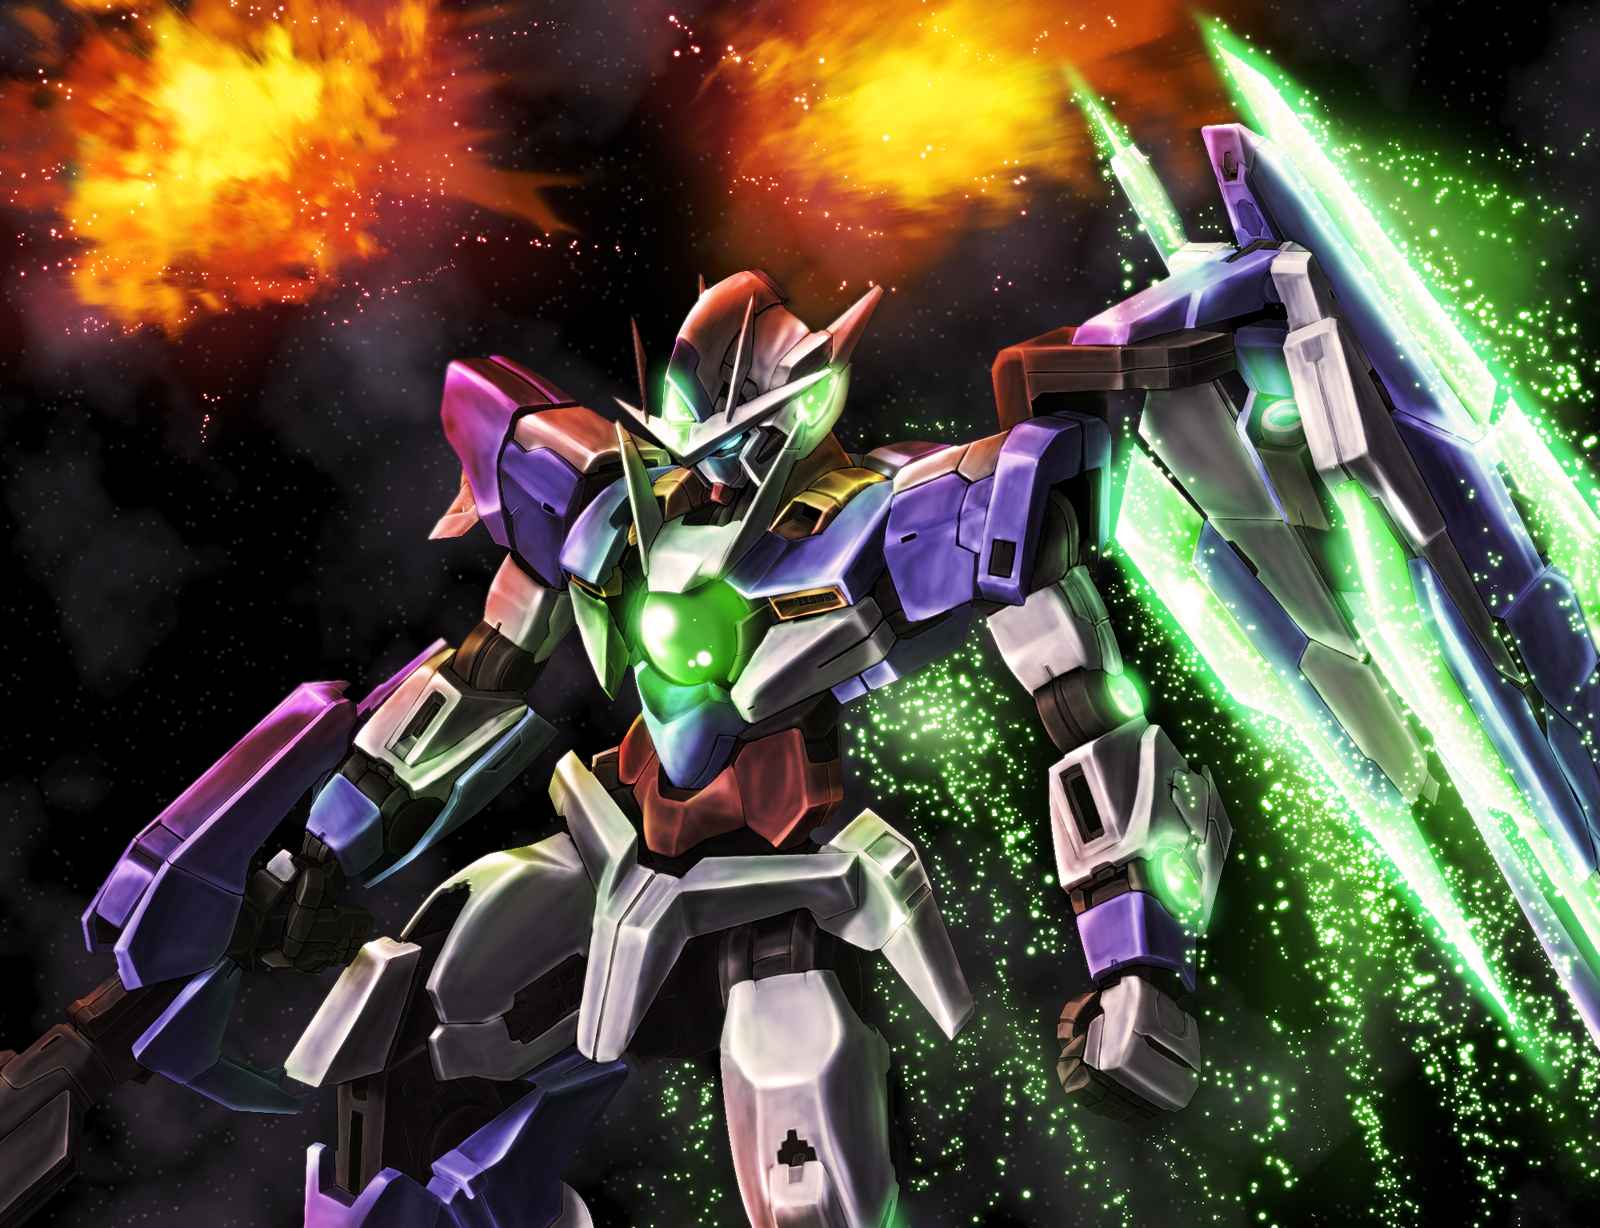 00 Qan T Mobile Suit Gundam 00 Super Robot Wars Anime Mech Gundam Artwork Digital Art Fan Art 1600x1228